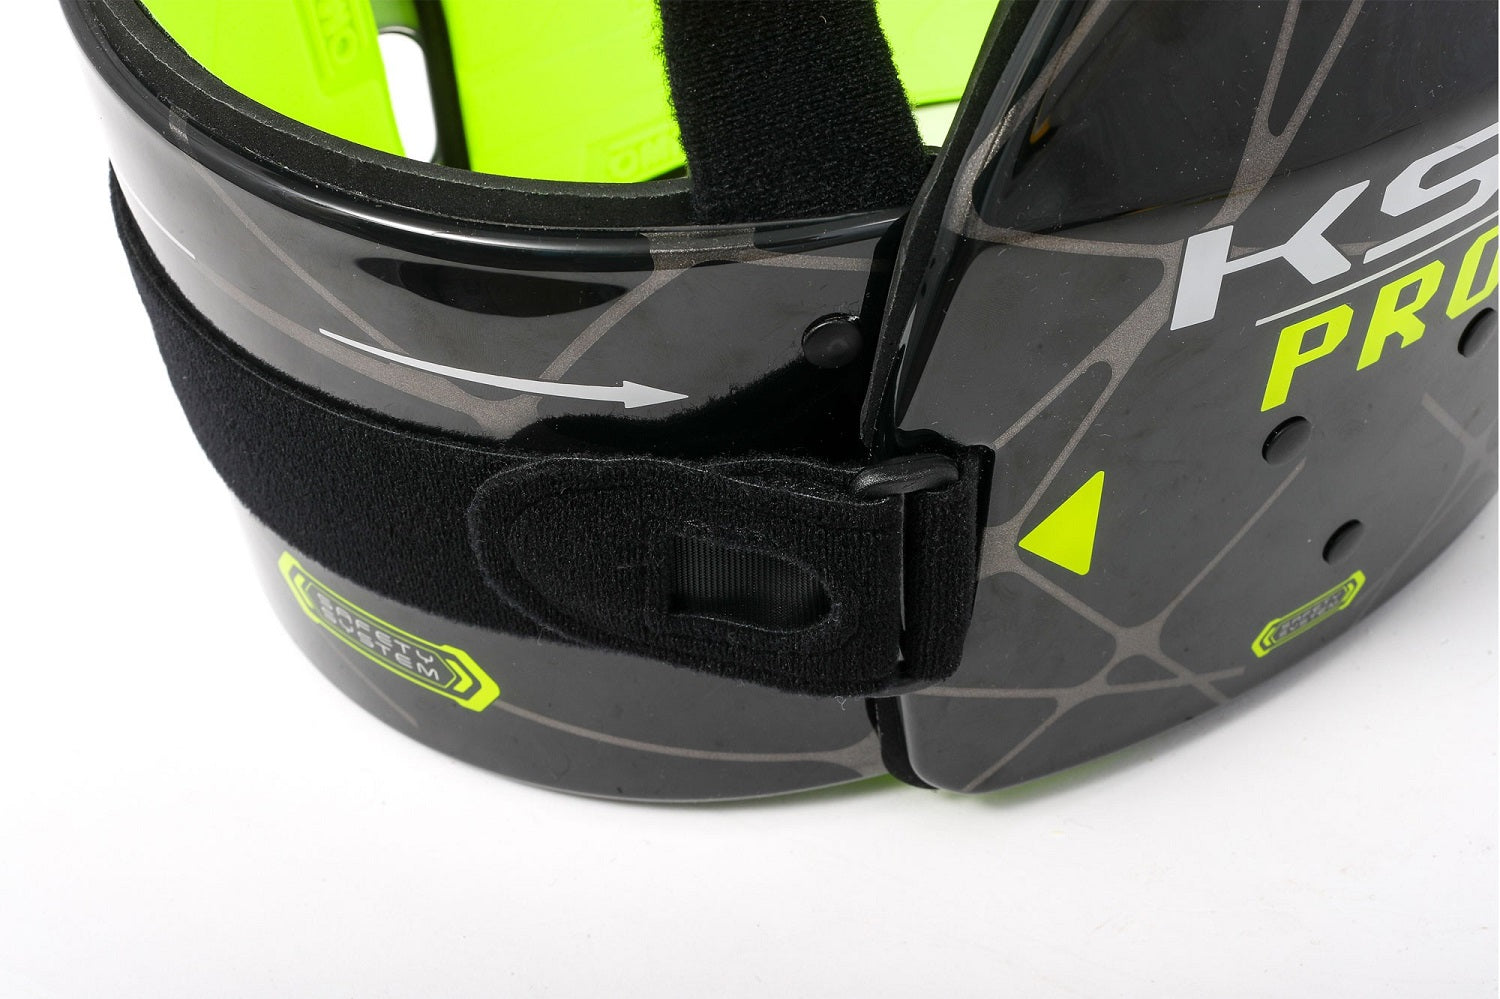 OMP KK0-0049-B01-178-L (KK049178L) KS-1 PRO Karting Body Protection, FIA 8870-2018, black/yellow, size L Photo-1 